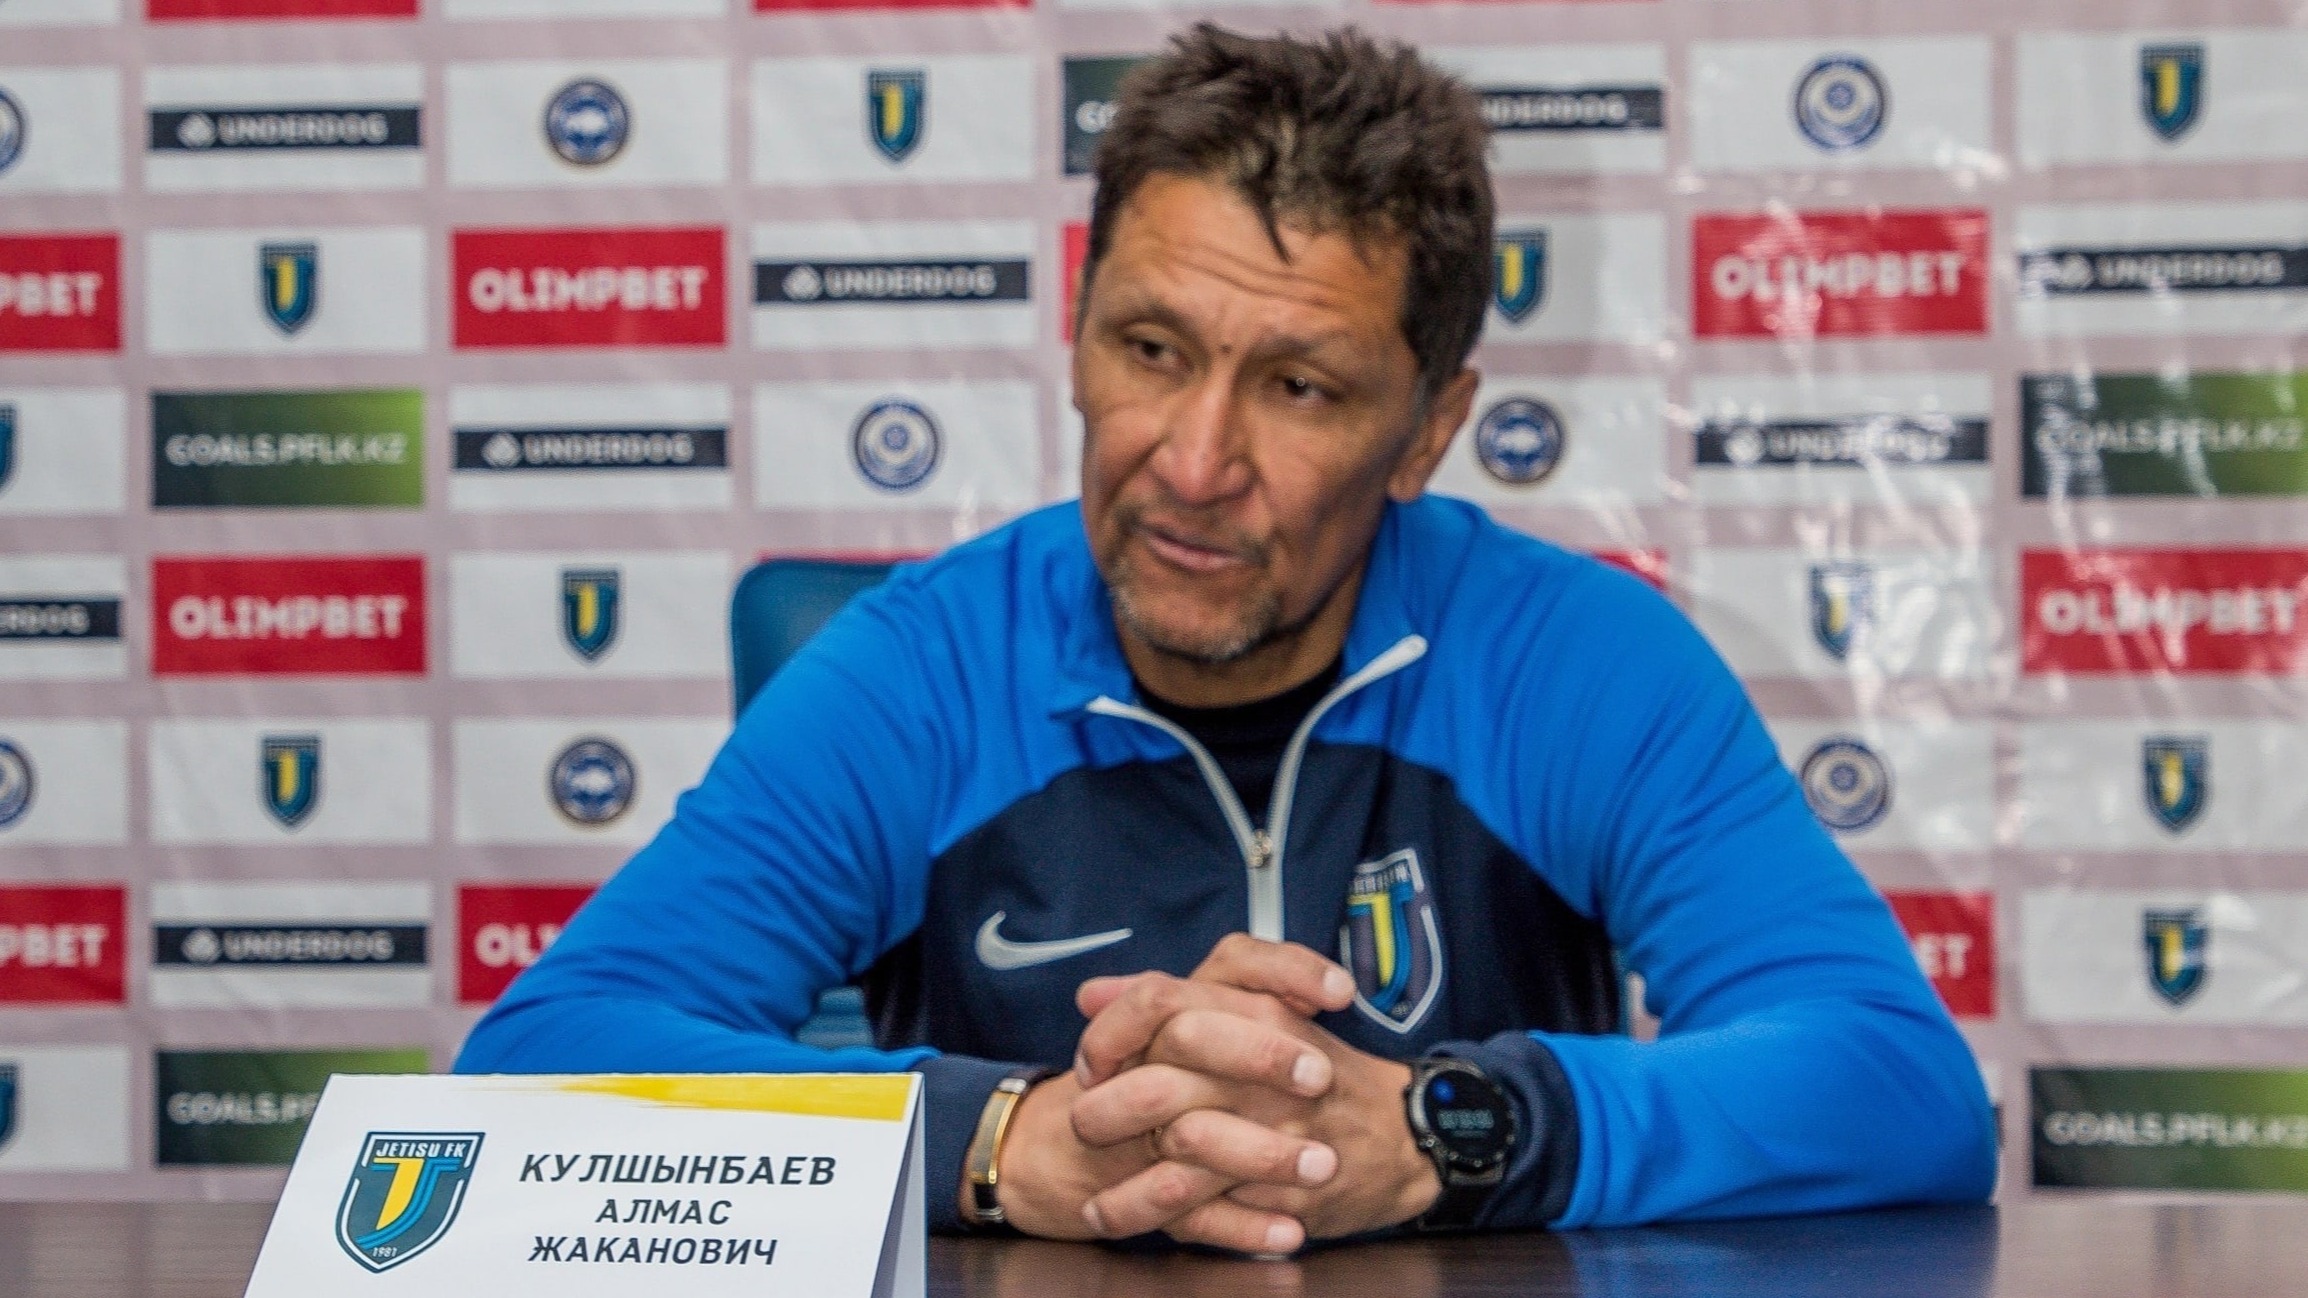 Главный тренер «Жетысу» Кулшинбаев прокомментировал поражение от «Кайсара»